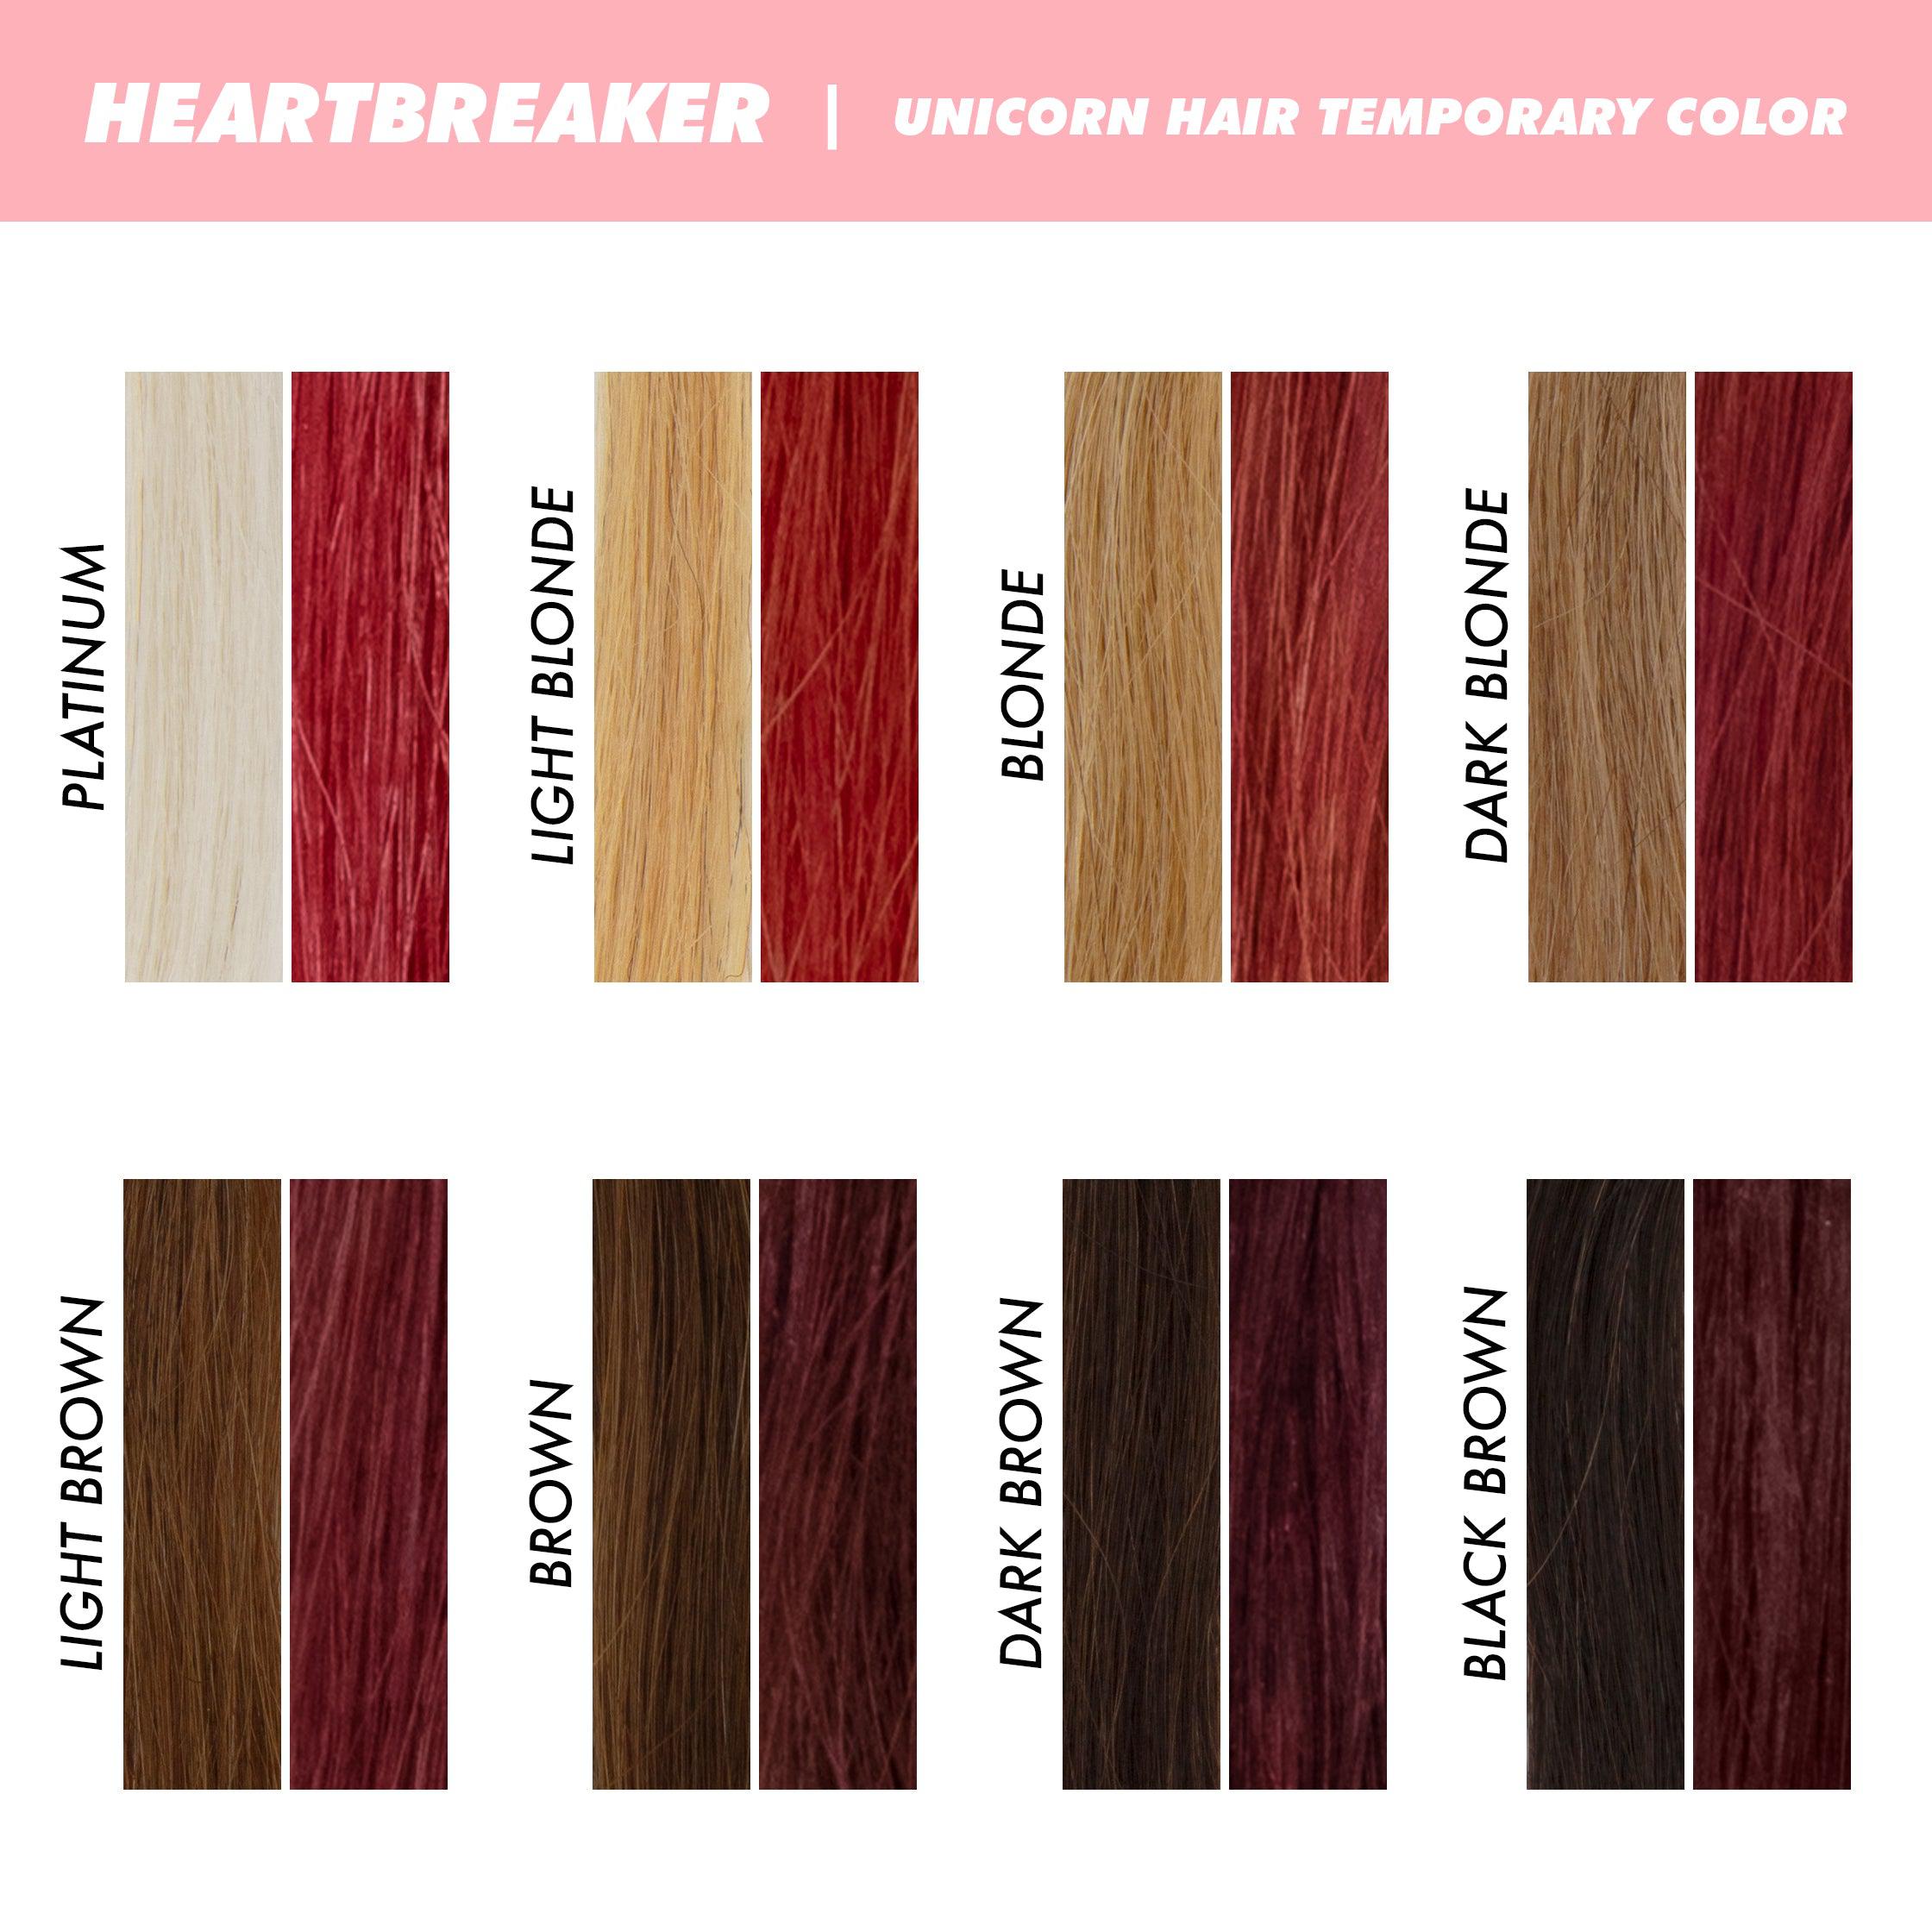 Unicorn Hair Temporary Hair Color variant:Heartbreaker